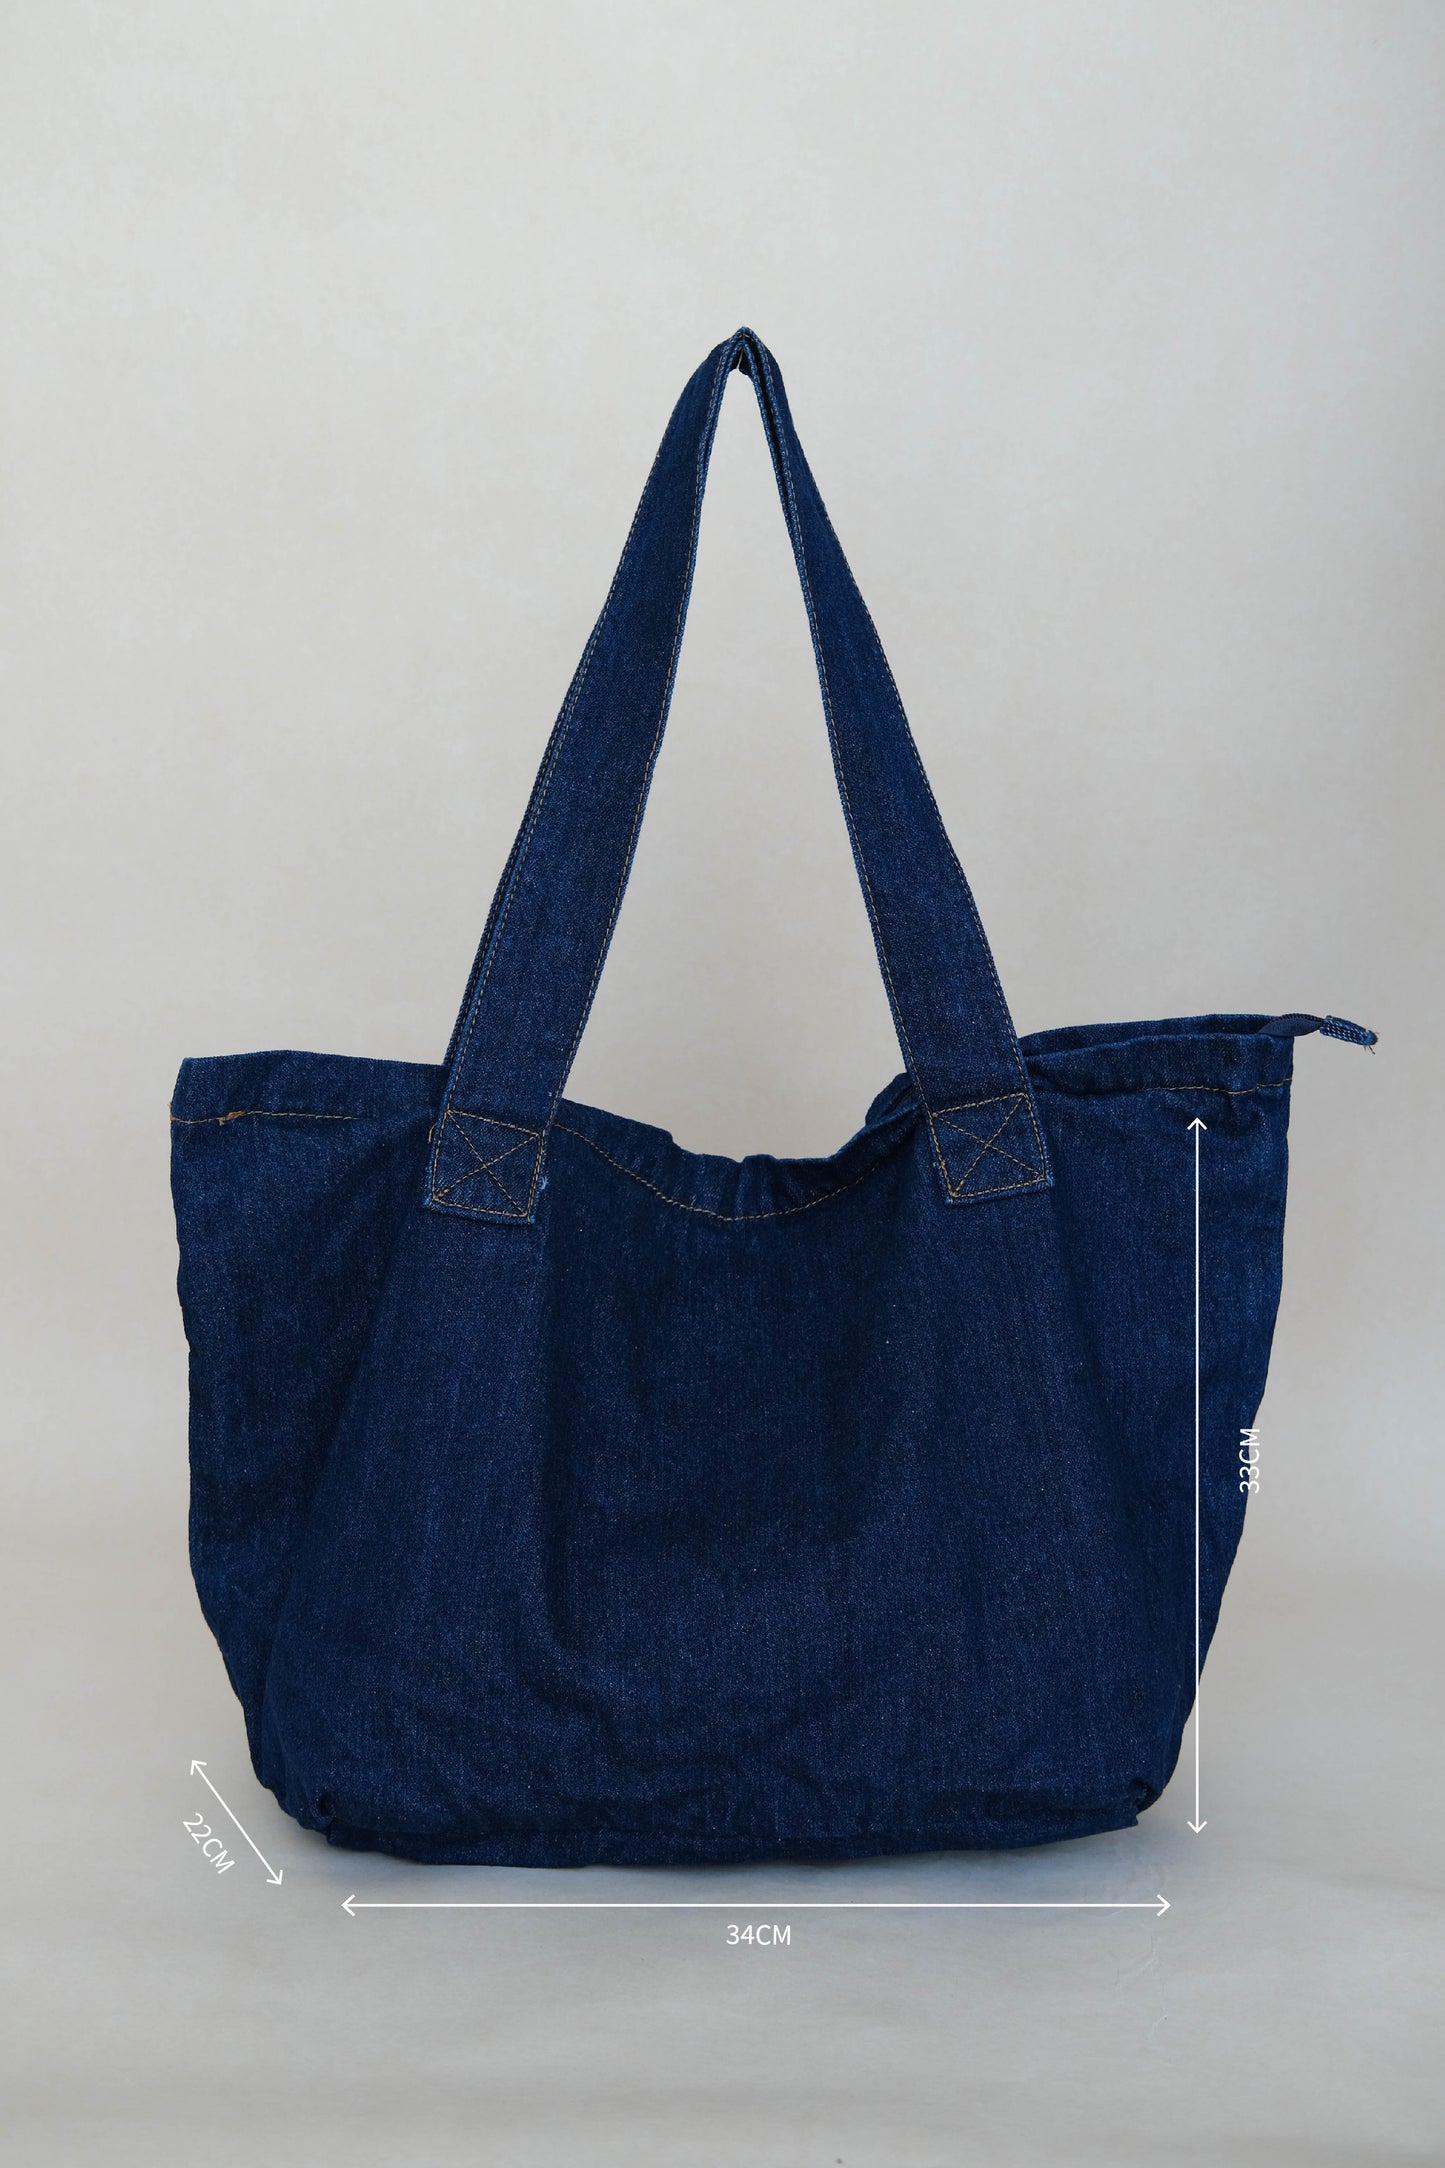 Tote shoulder bag in denim blue